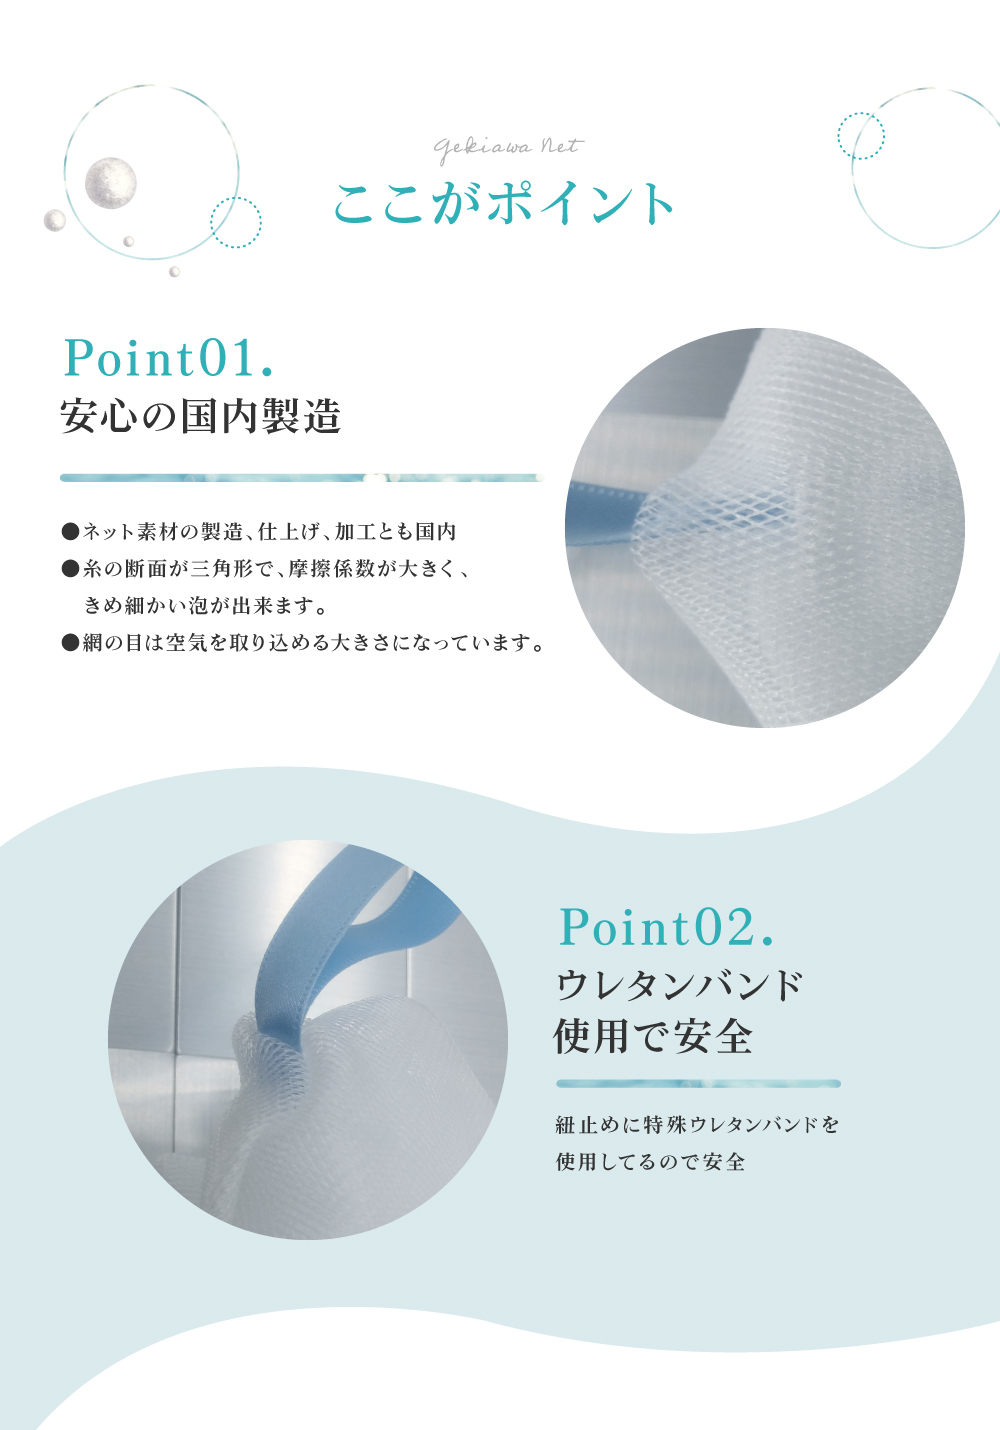 GEKIAWA NETは、安心の国内製造。糸の断面が三角形で、摩擦係数が大きく、きめ細かい泡が出来ます。紐止めには特殊ウレタンバンドを使用してるので安全です。